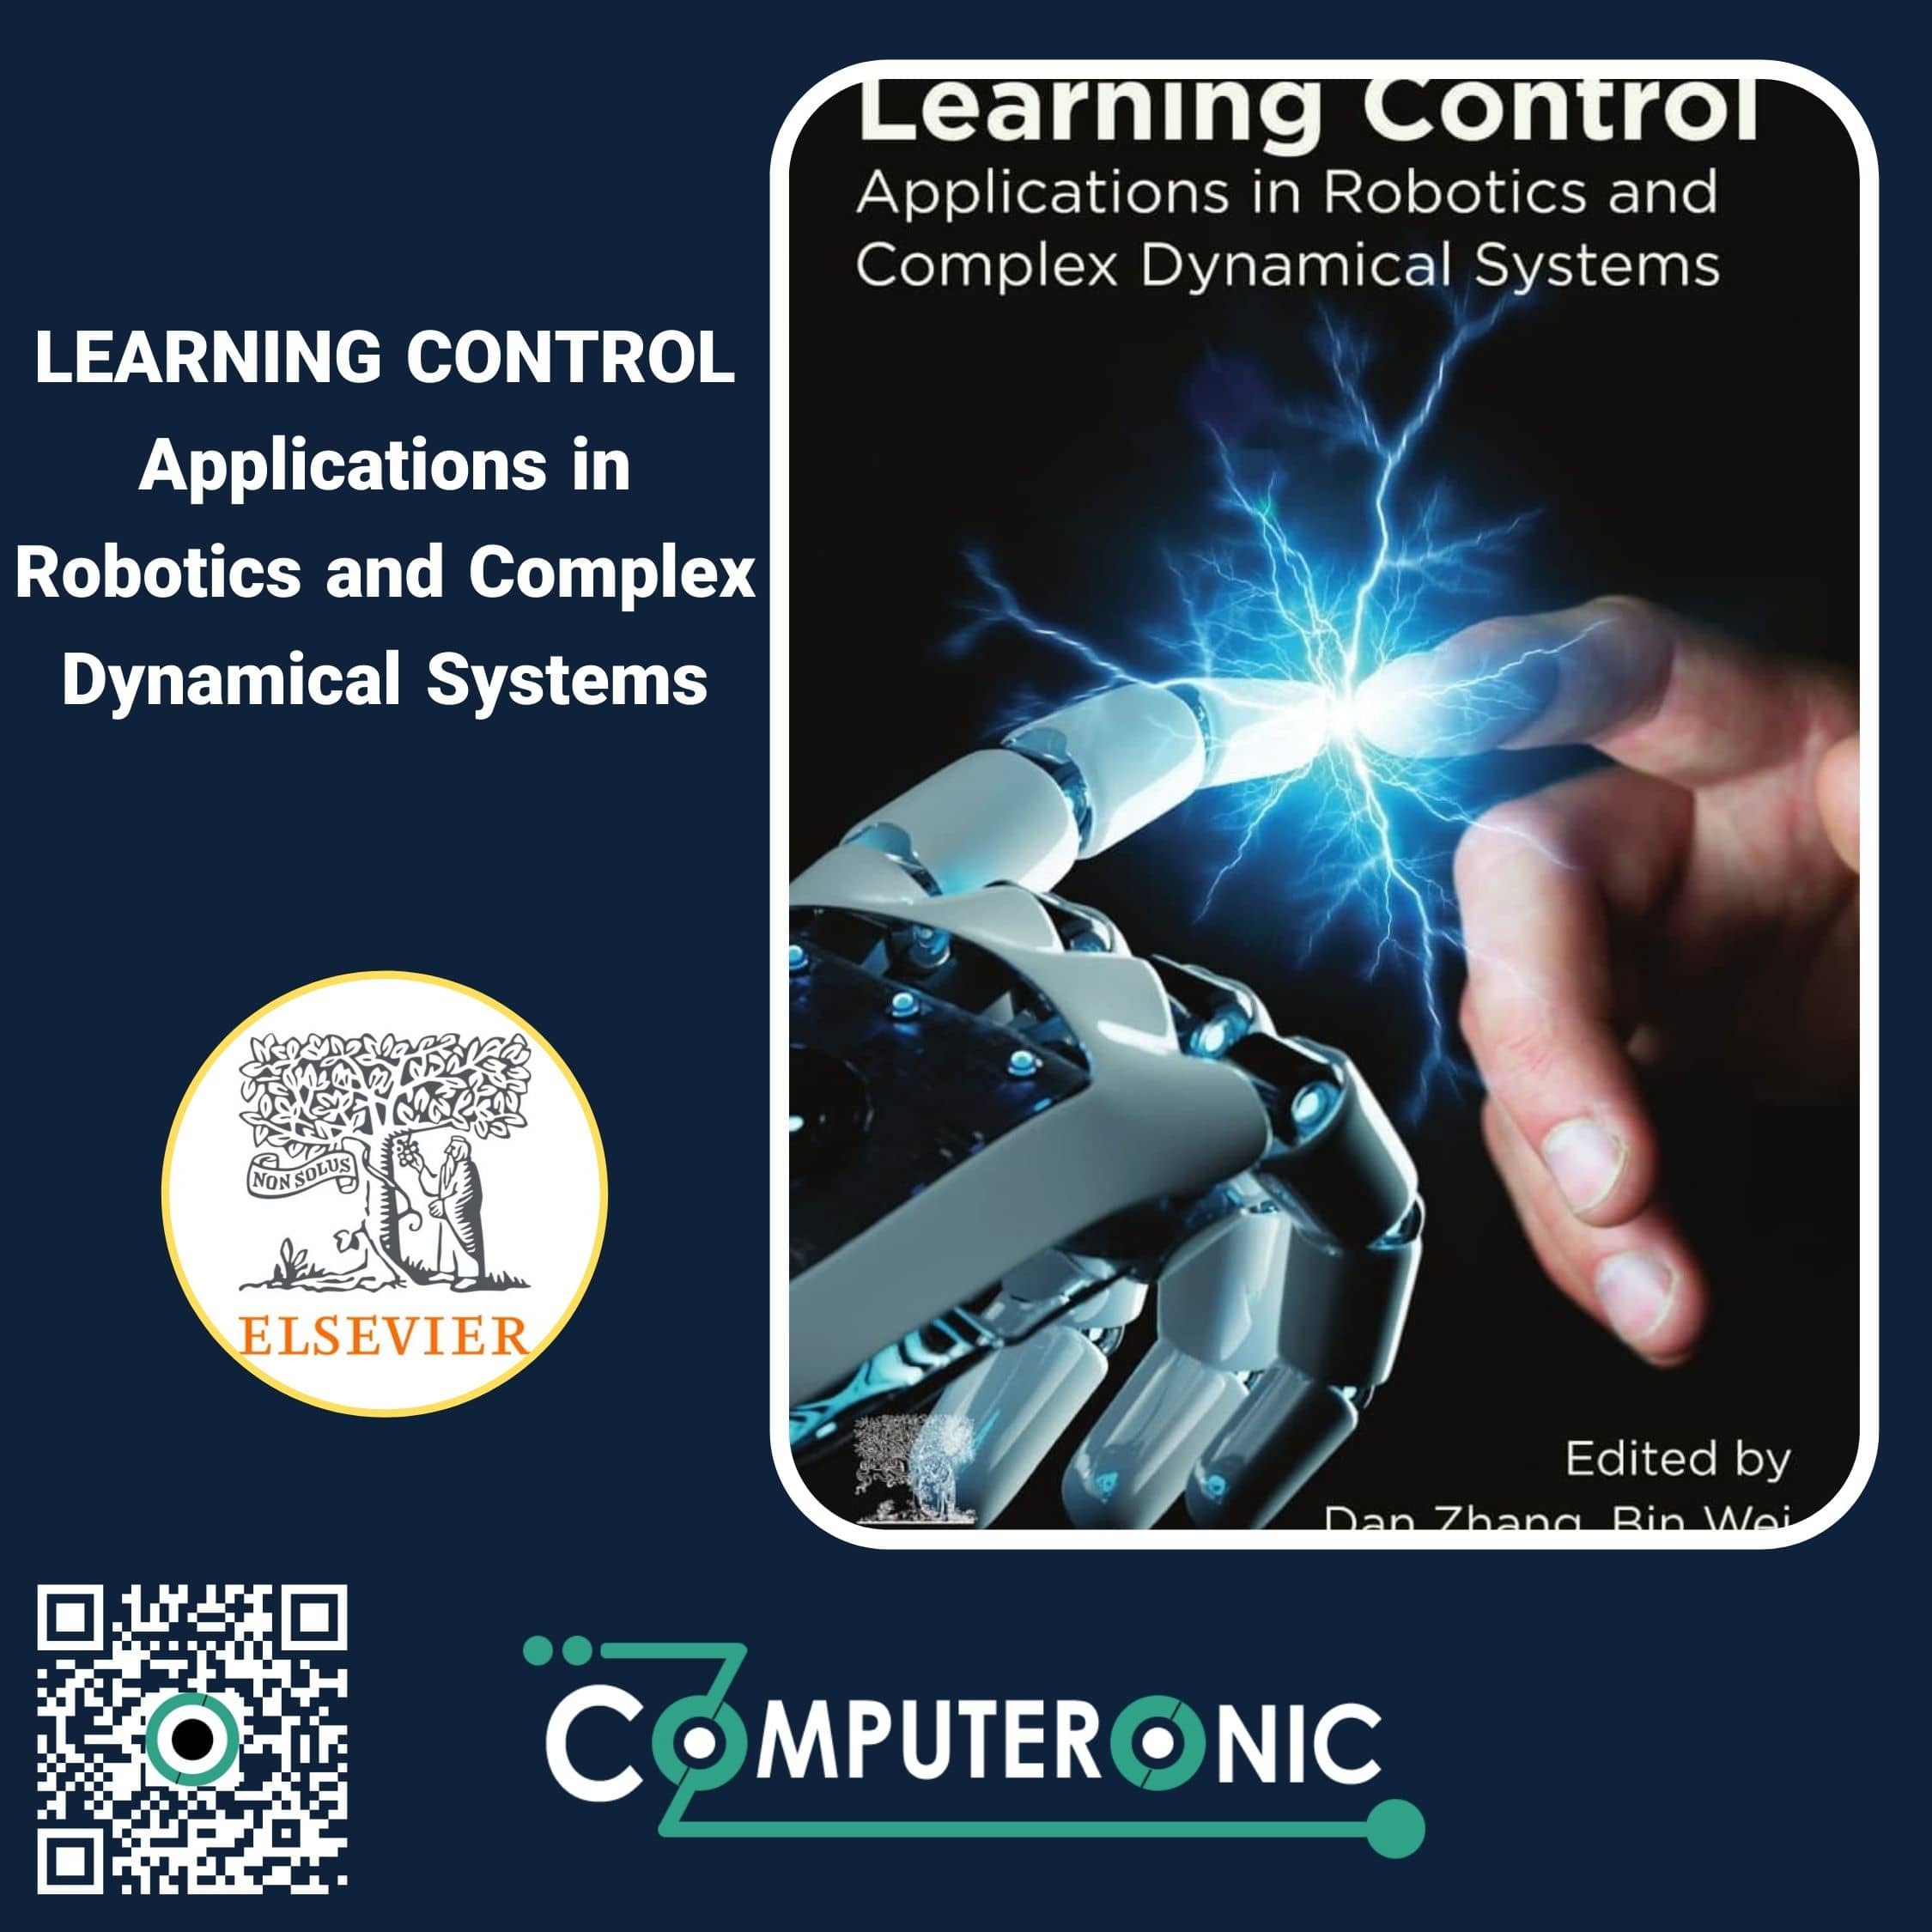 کتاب کنترل یادگیری کاربرد در رباتیک و سیستم های دینامیکی پیچیده کامپیوترونیک